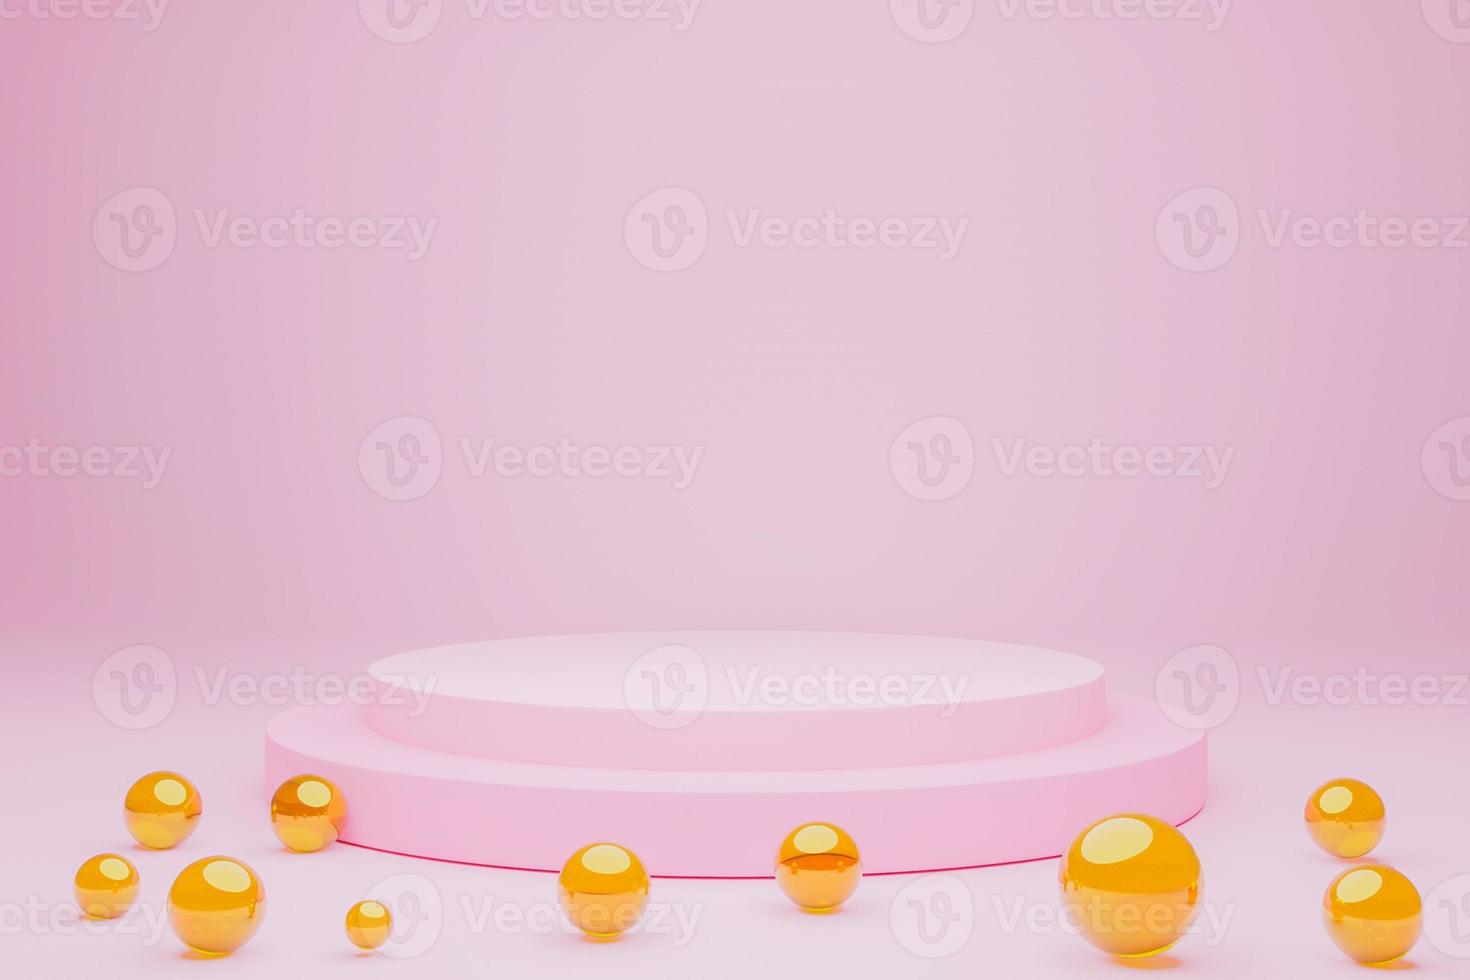 pódio de produto de exibição de maquete, renderização em 3d. fundo de cena abstrato. pódio de cilindro em fundo rosa. apresentação do produto, maquete, mostrar produto cosmético, pódio, pedestal ou plataforma de palco foto